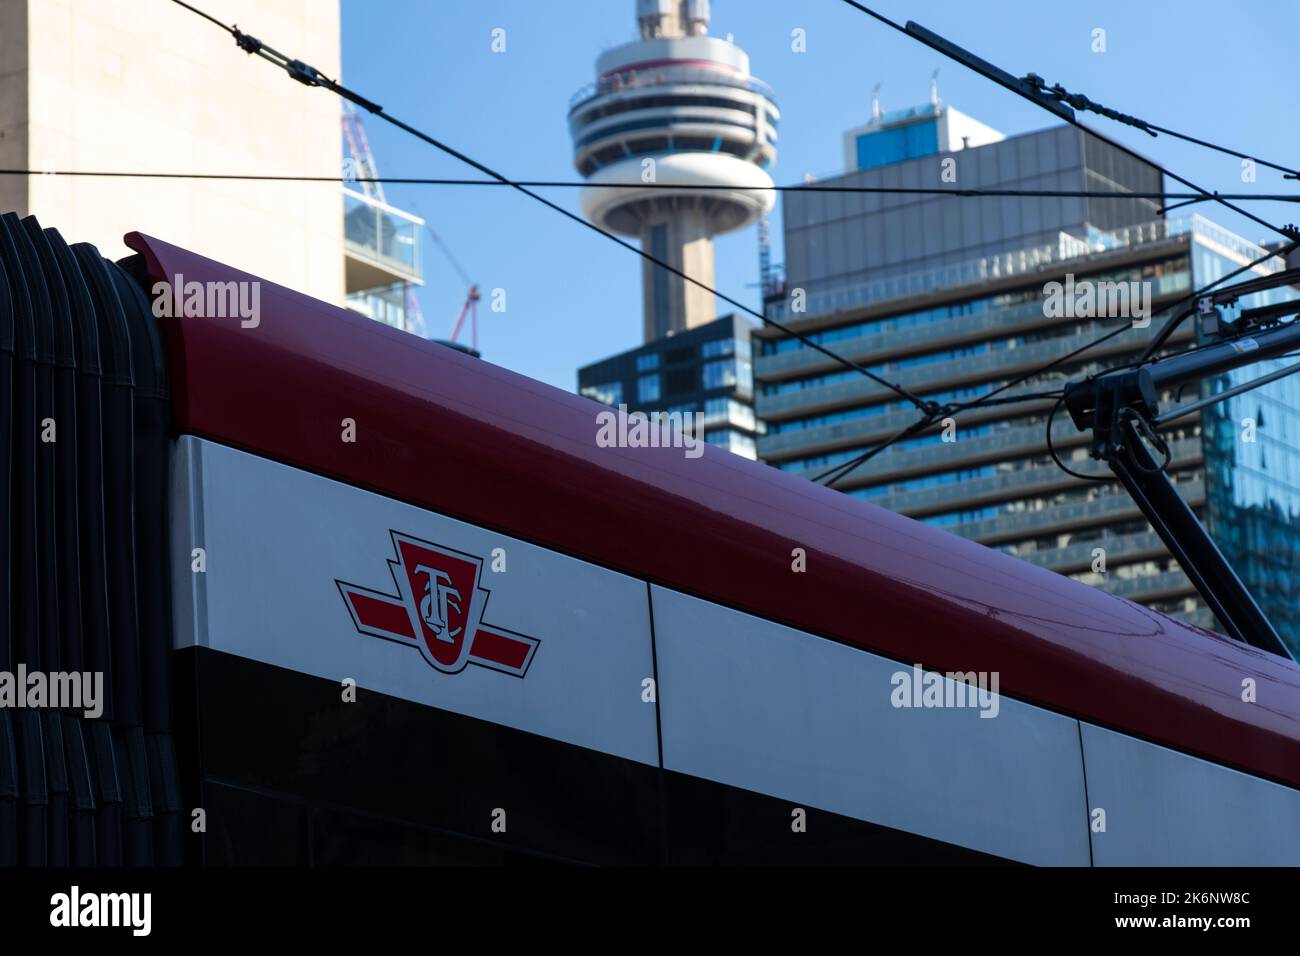 Le logo de la TTC, Toronto Transit Commission est visible sur le côté d'un tramway TTC, la Tour CN étant vue en arrière-plan. Banque D'Images